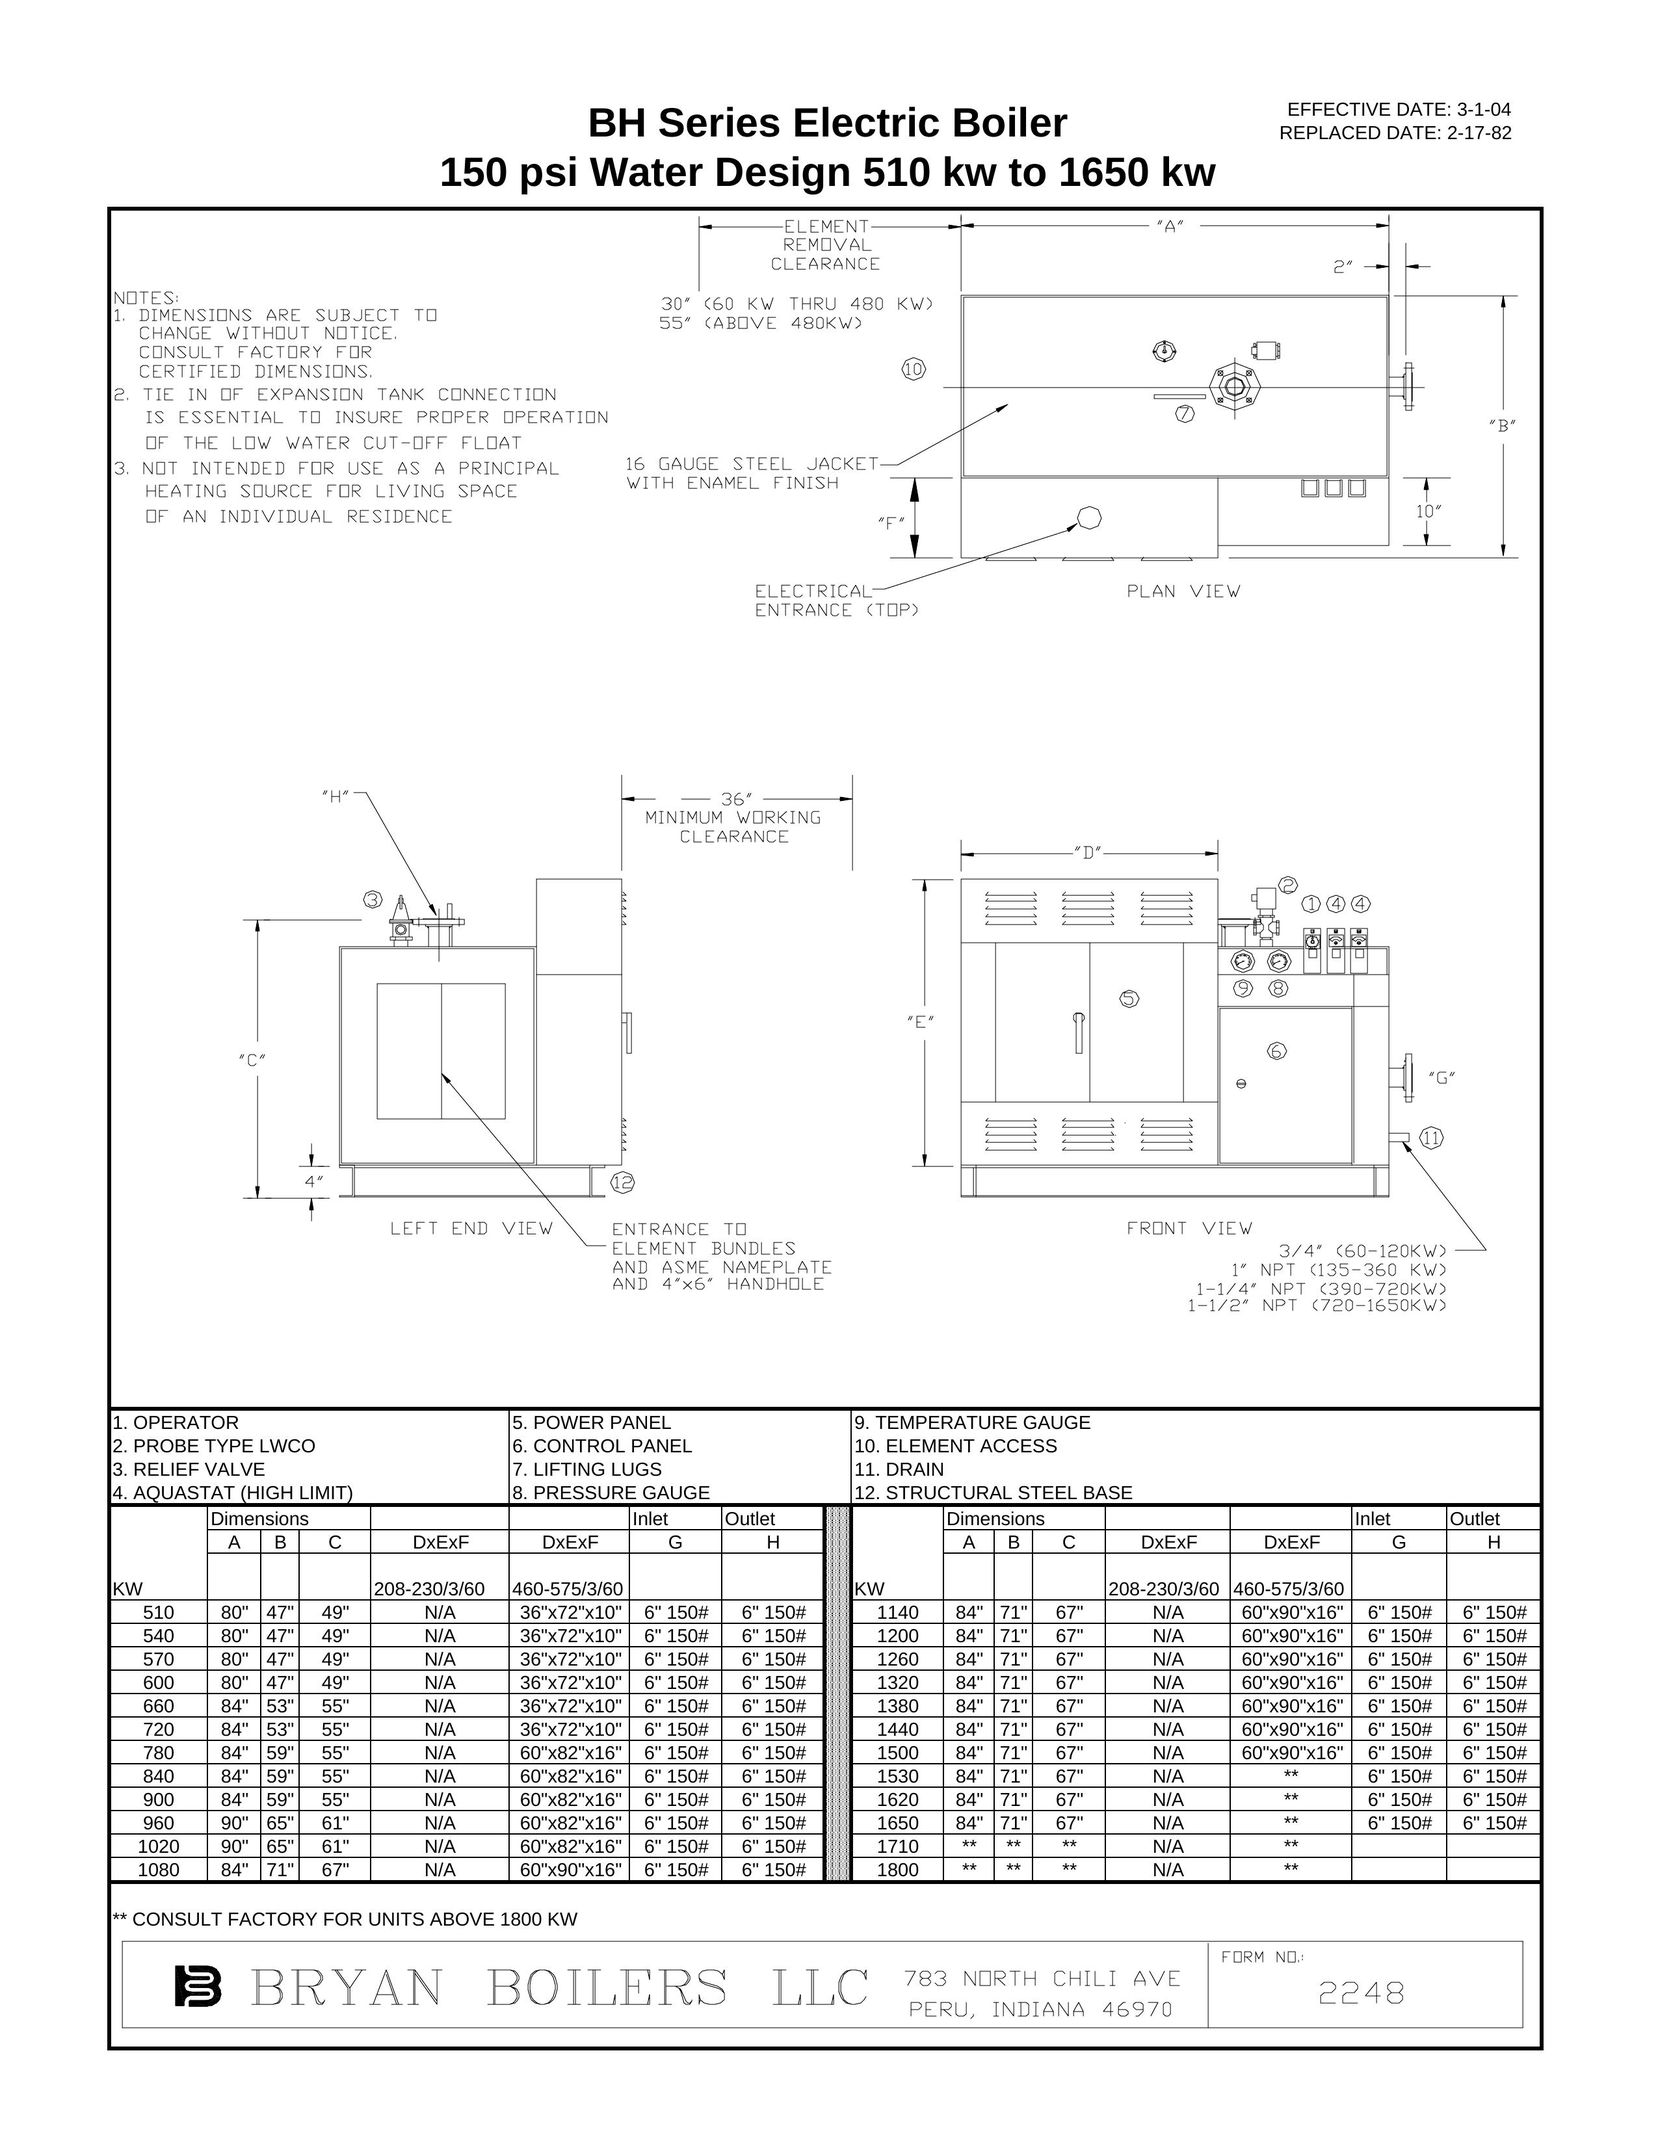 Bryan Boilers BH Series Boiler User Manual